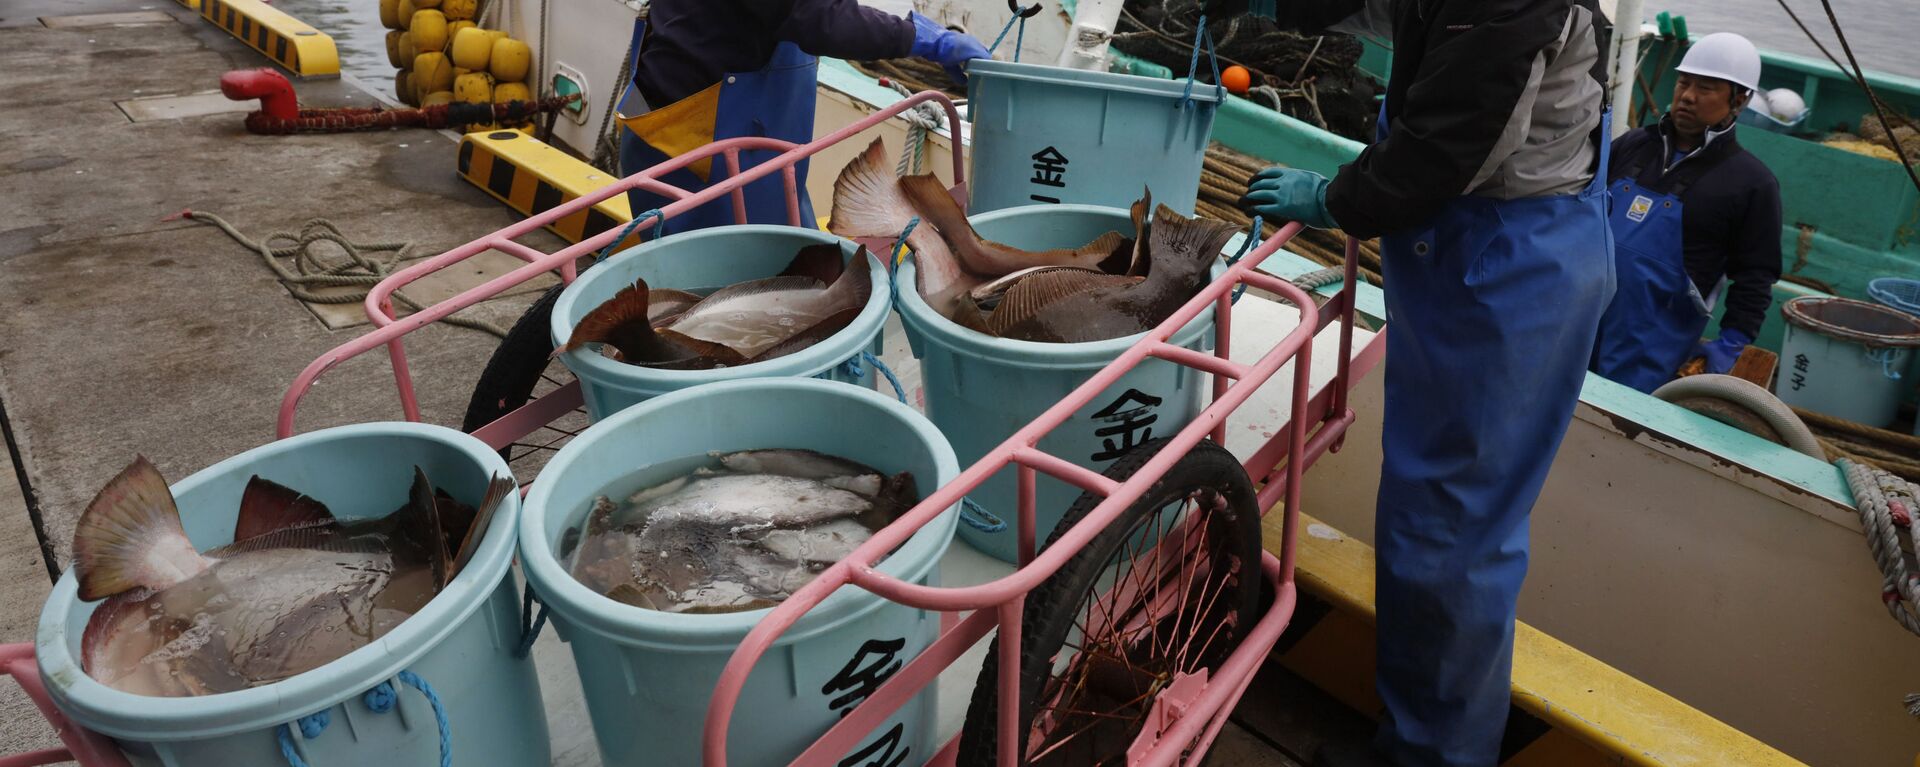 Ngư dân dỡ cá từ một chiếc thuyền tại một trung tâm chế biến ở Soma, tỉnh Fukushima, Nhật Bản, 2019. - Sputnik Việt Nam, 1920, 19.04.2021